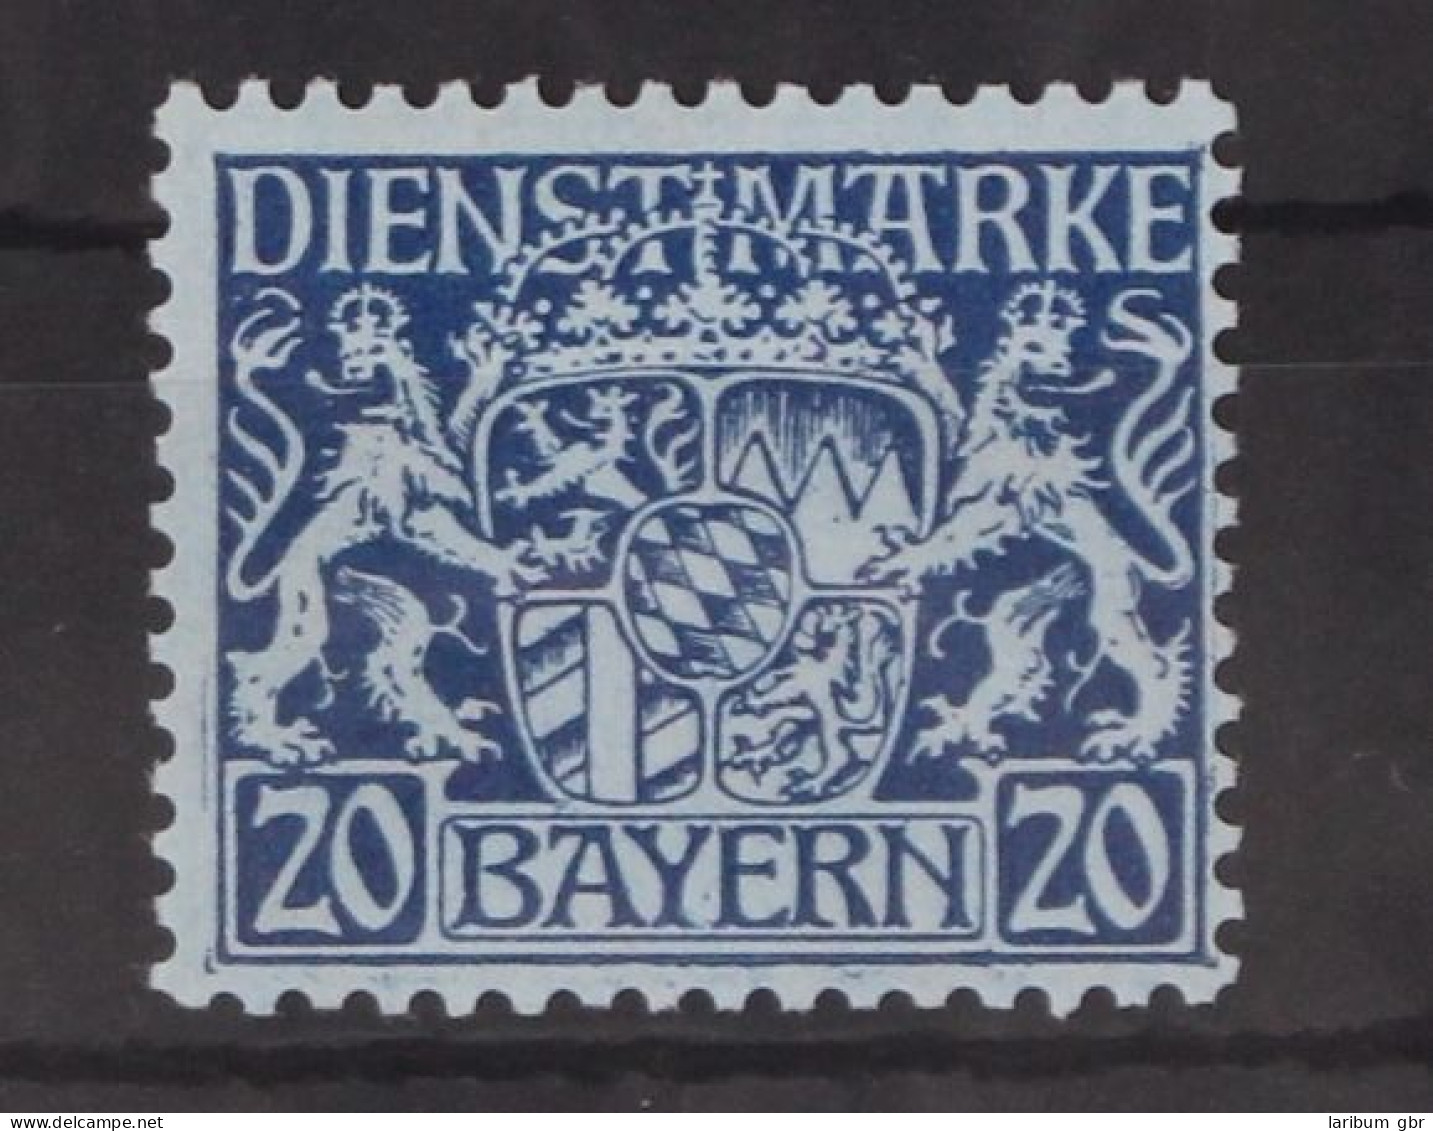 Bayern Dienstmarken 20 Postfrisch #GM098 - Nuovi